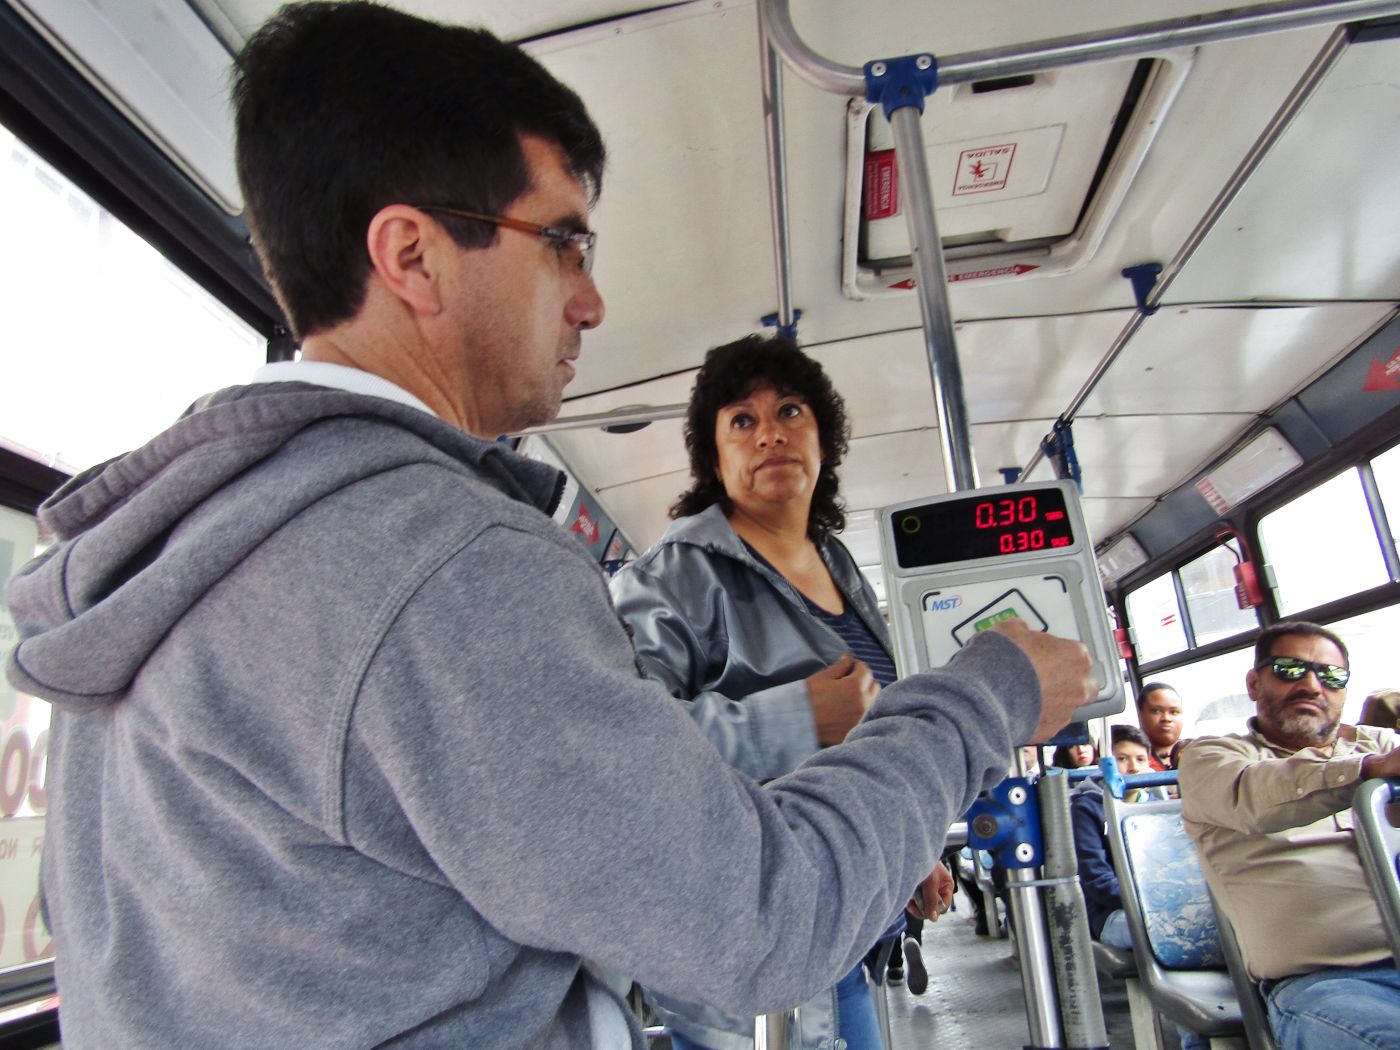 Resumen 2018: Pasaje de bus solo se paga con tarjeta en Cuenca